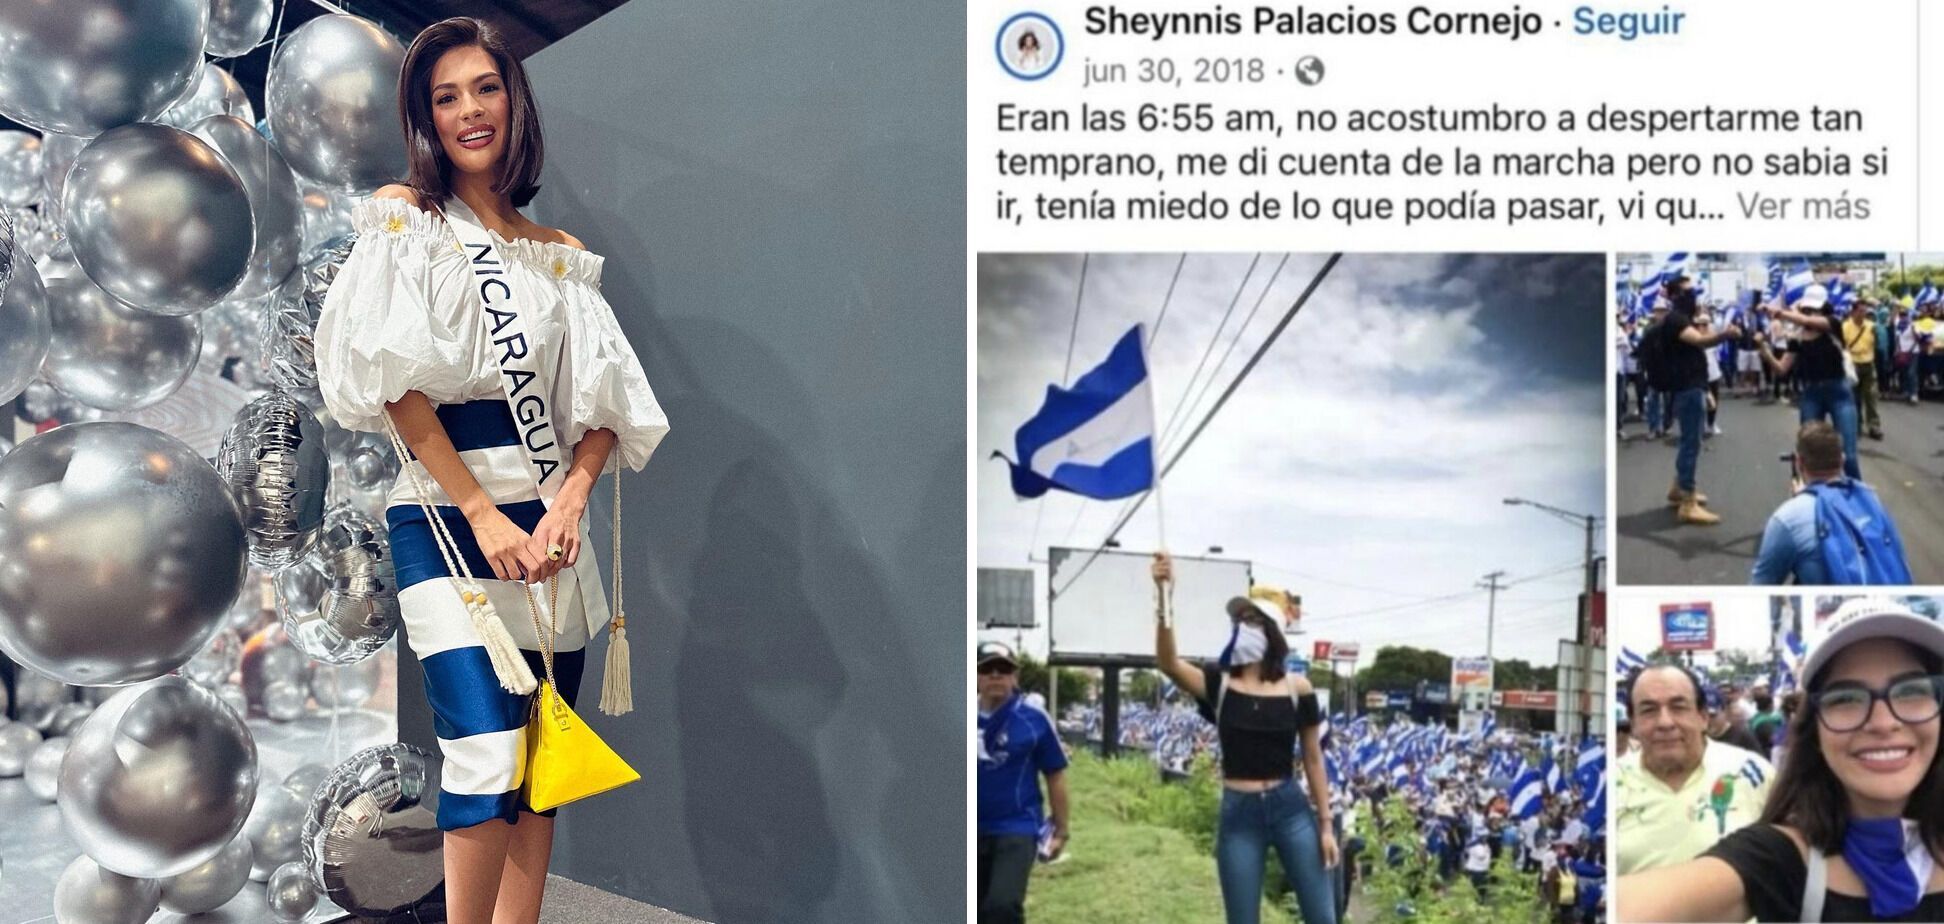 Новая "Мисс Вселенная" из Никарагуа попала в громкий скандал после победы из-за своего прошлого